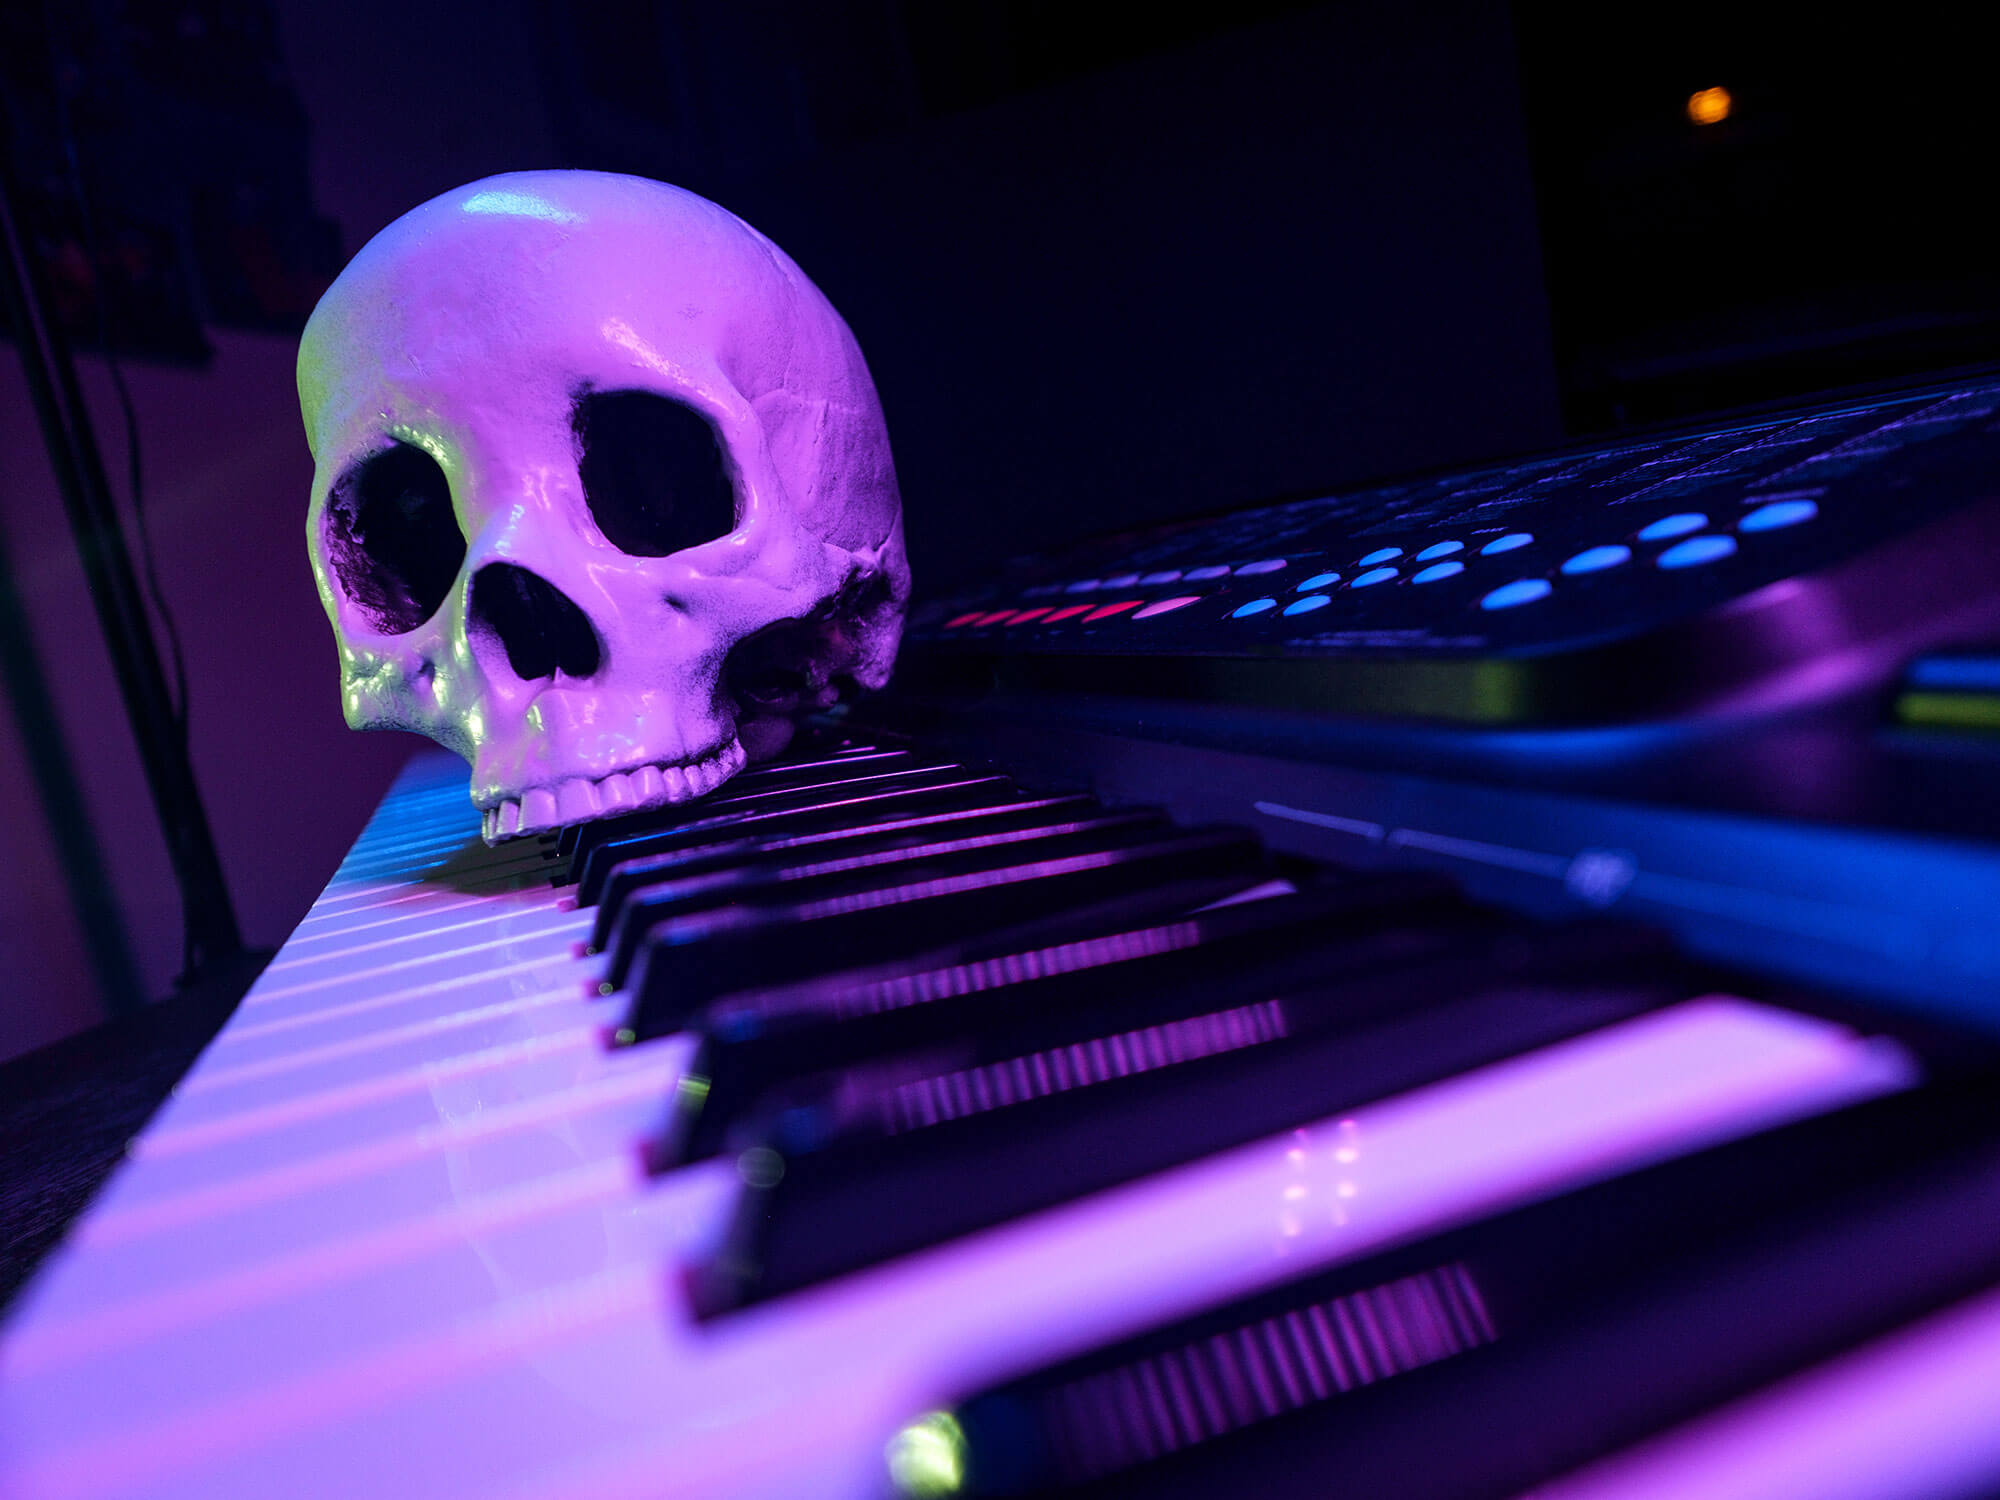 Human skull on a keyboard